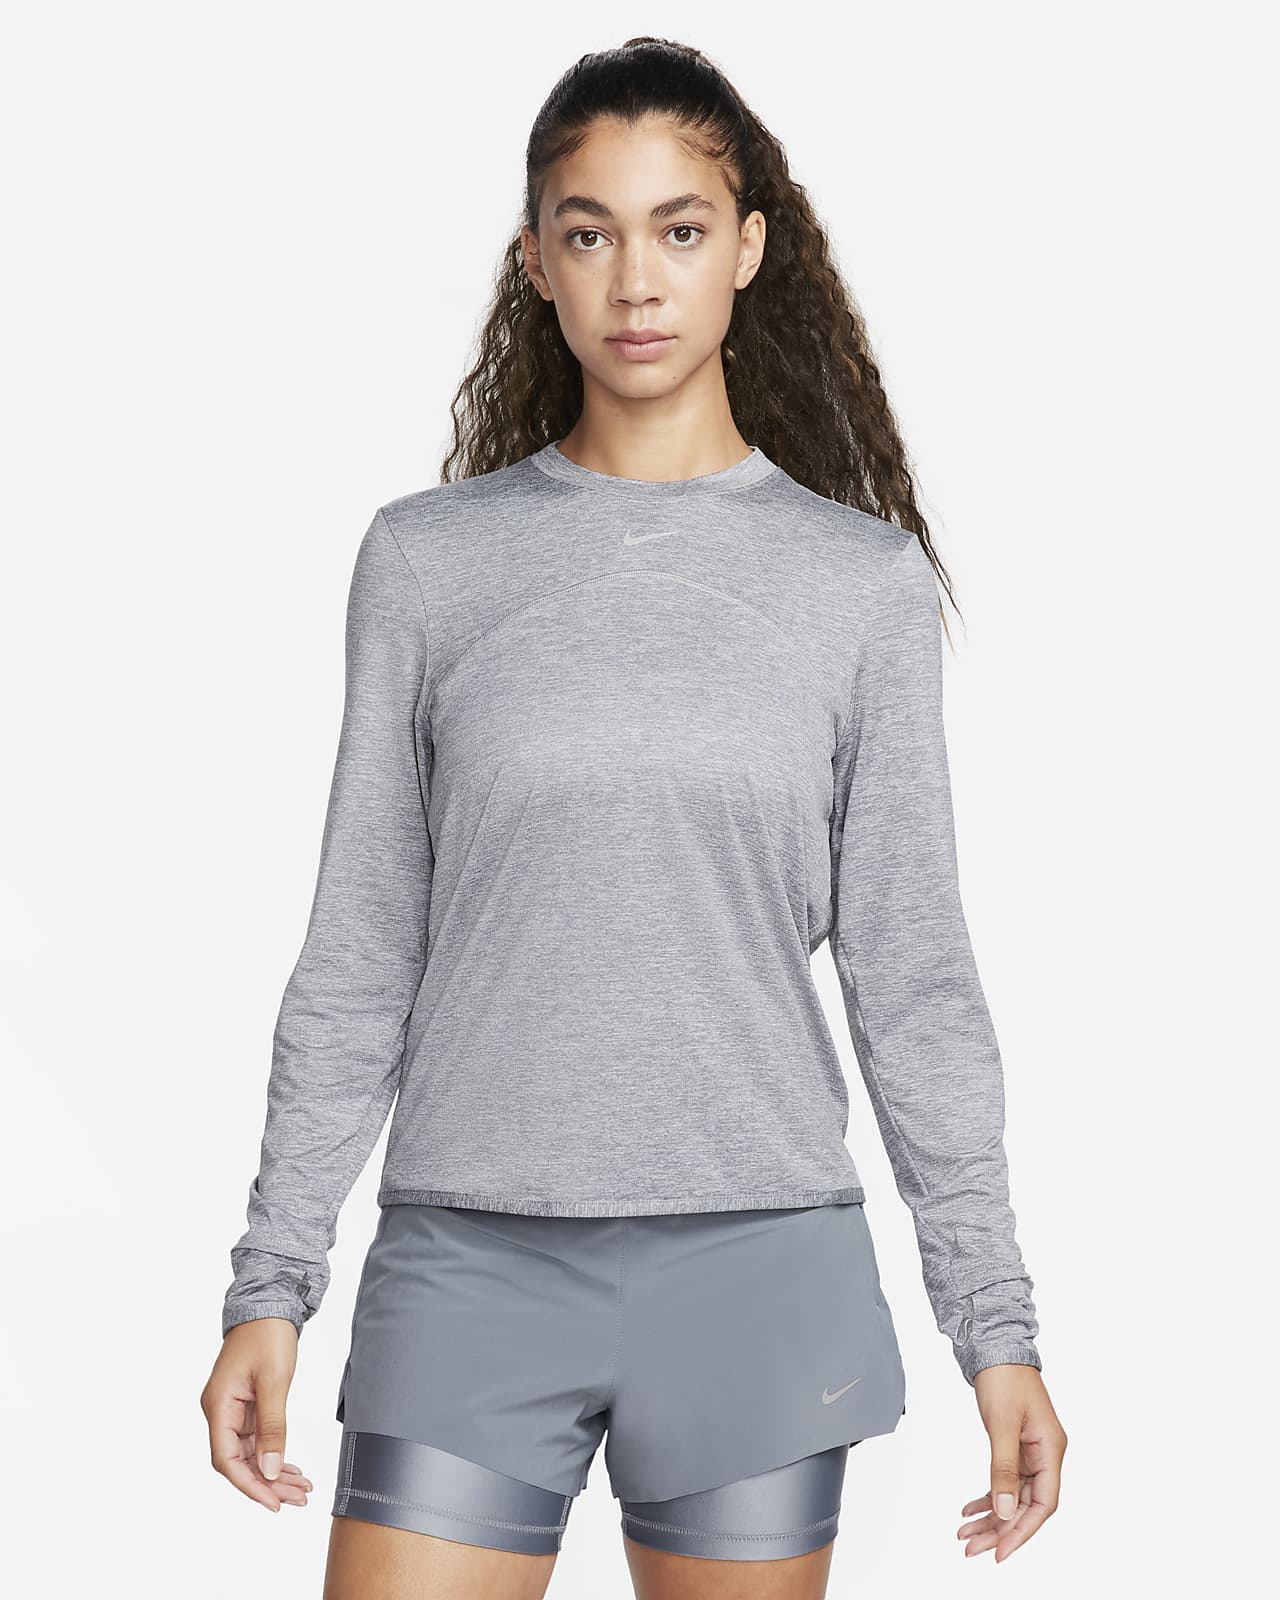 Damska koszulka z półokrągłym dekoltem do biegania Nike Dri-FIT Swift UV